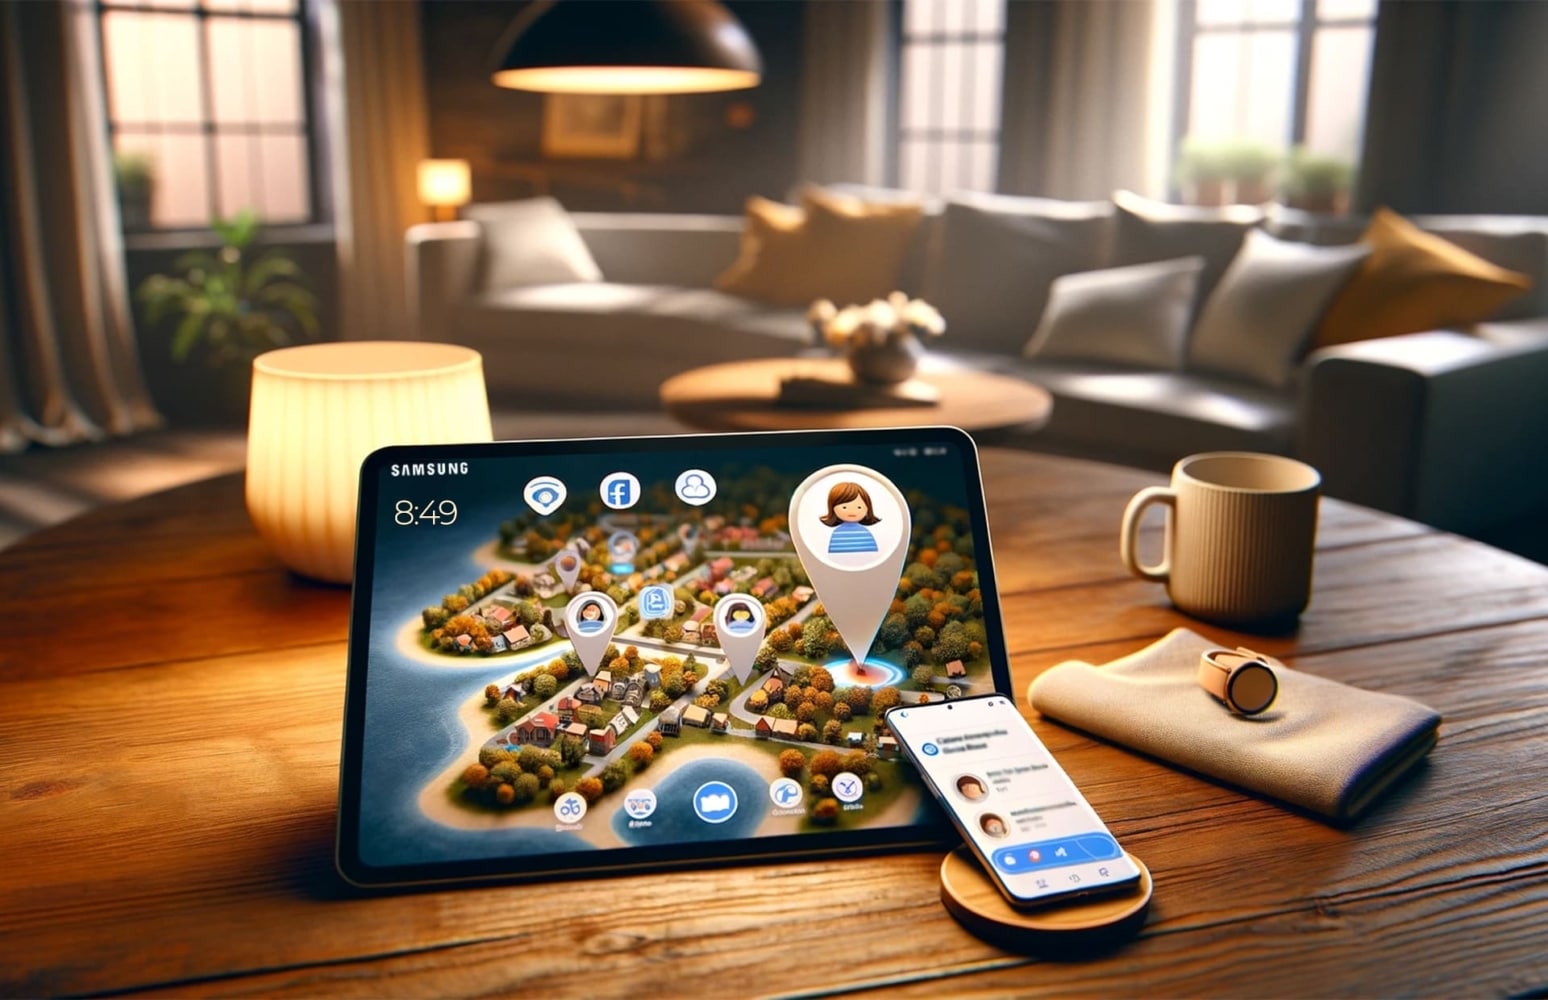 Na sala, um tablet Samsung com um mapa aberto mostrando o terreno com árvores, casas e marcas de geolocalização está sobre uma mesa, com um telefone ligado ao lado